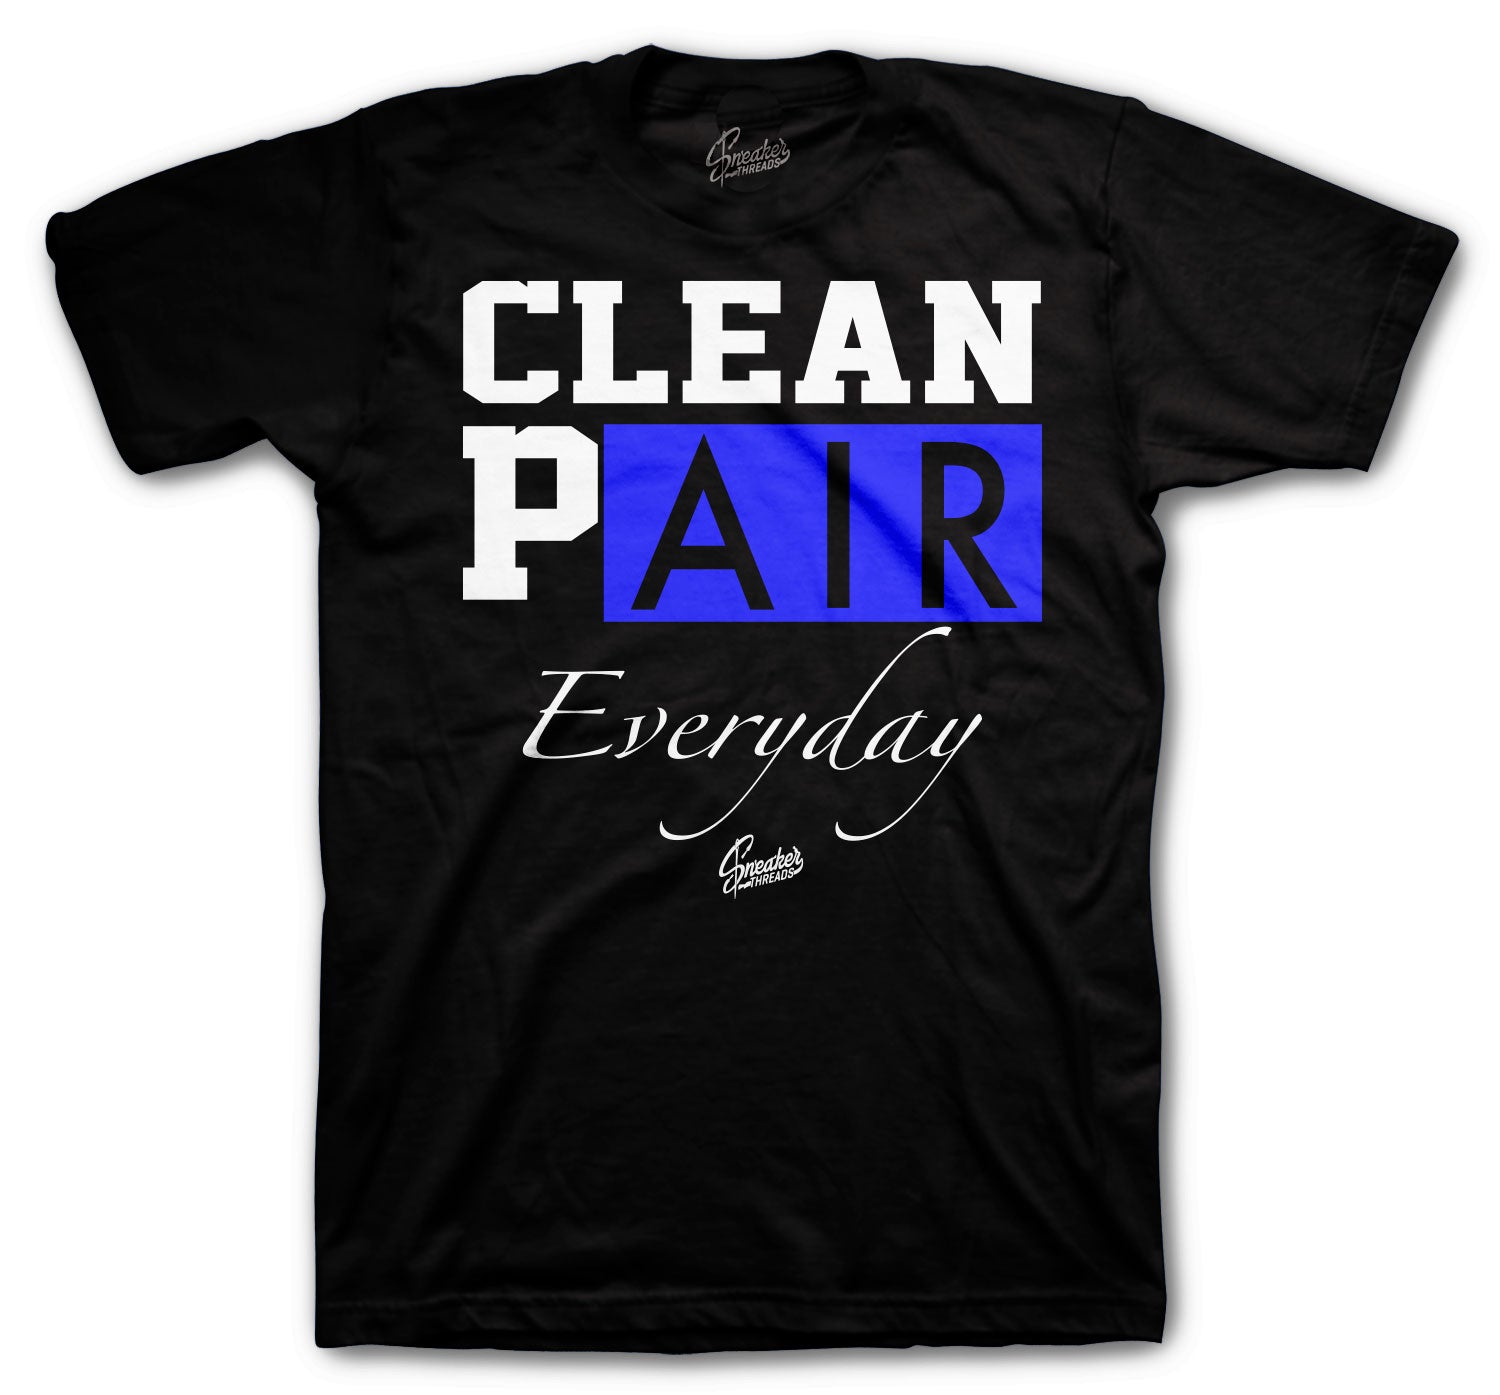 Retro 5 Racer Blue Shirt - Clean Pair - Black